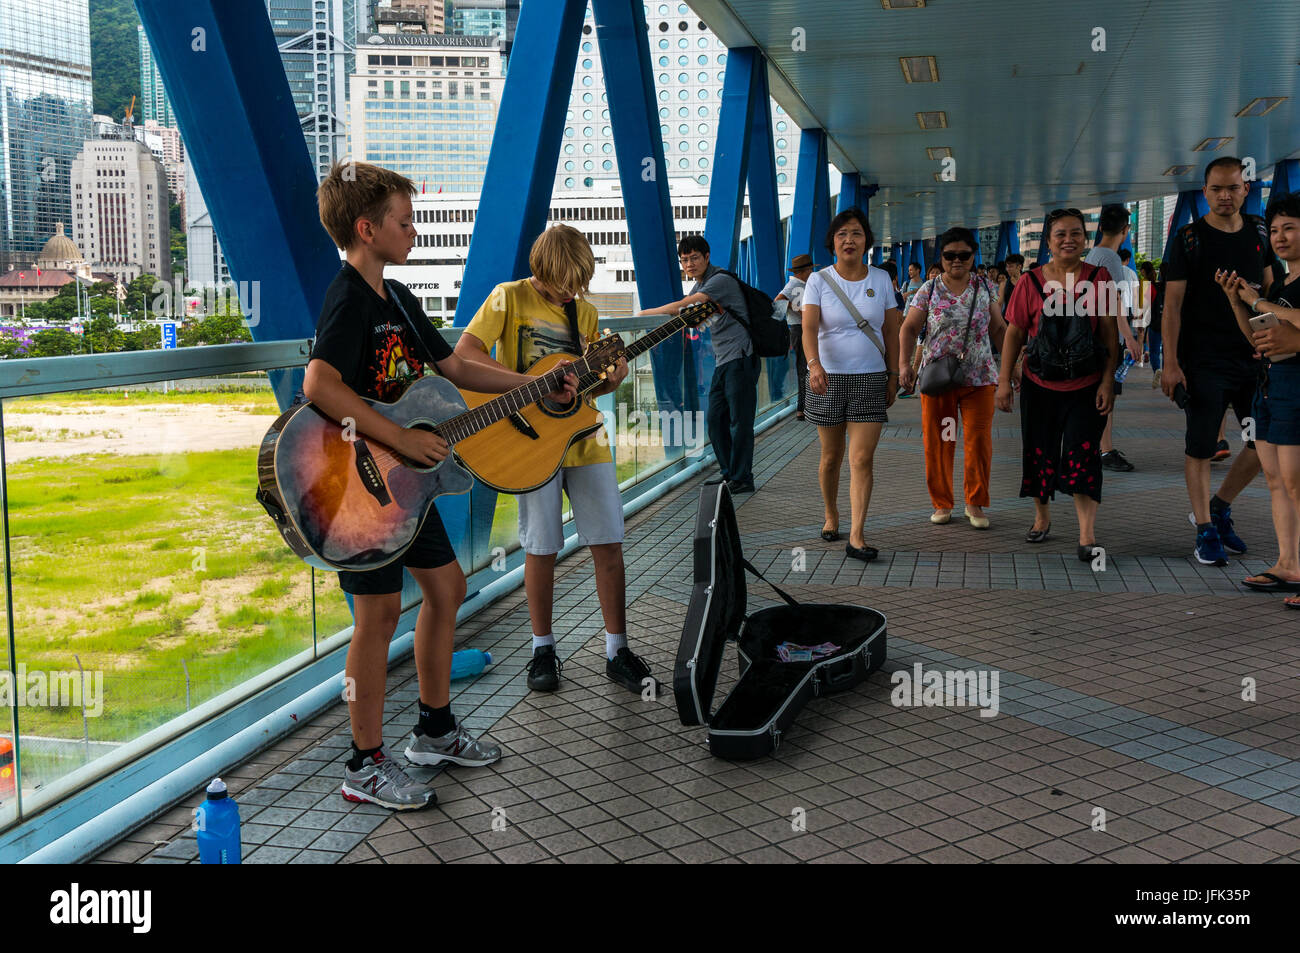 Los jóvenes caucásicos músicos callejeros, músicos callejeros, tocando guitarras en Hong Kong, China Foto de stock